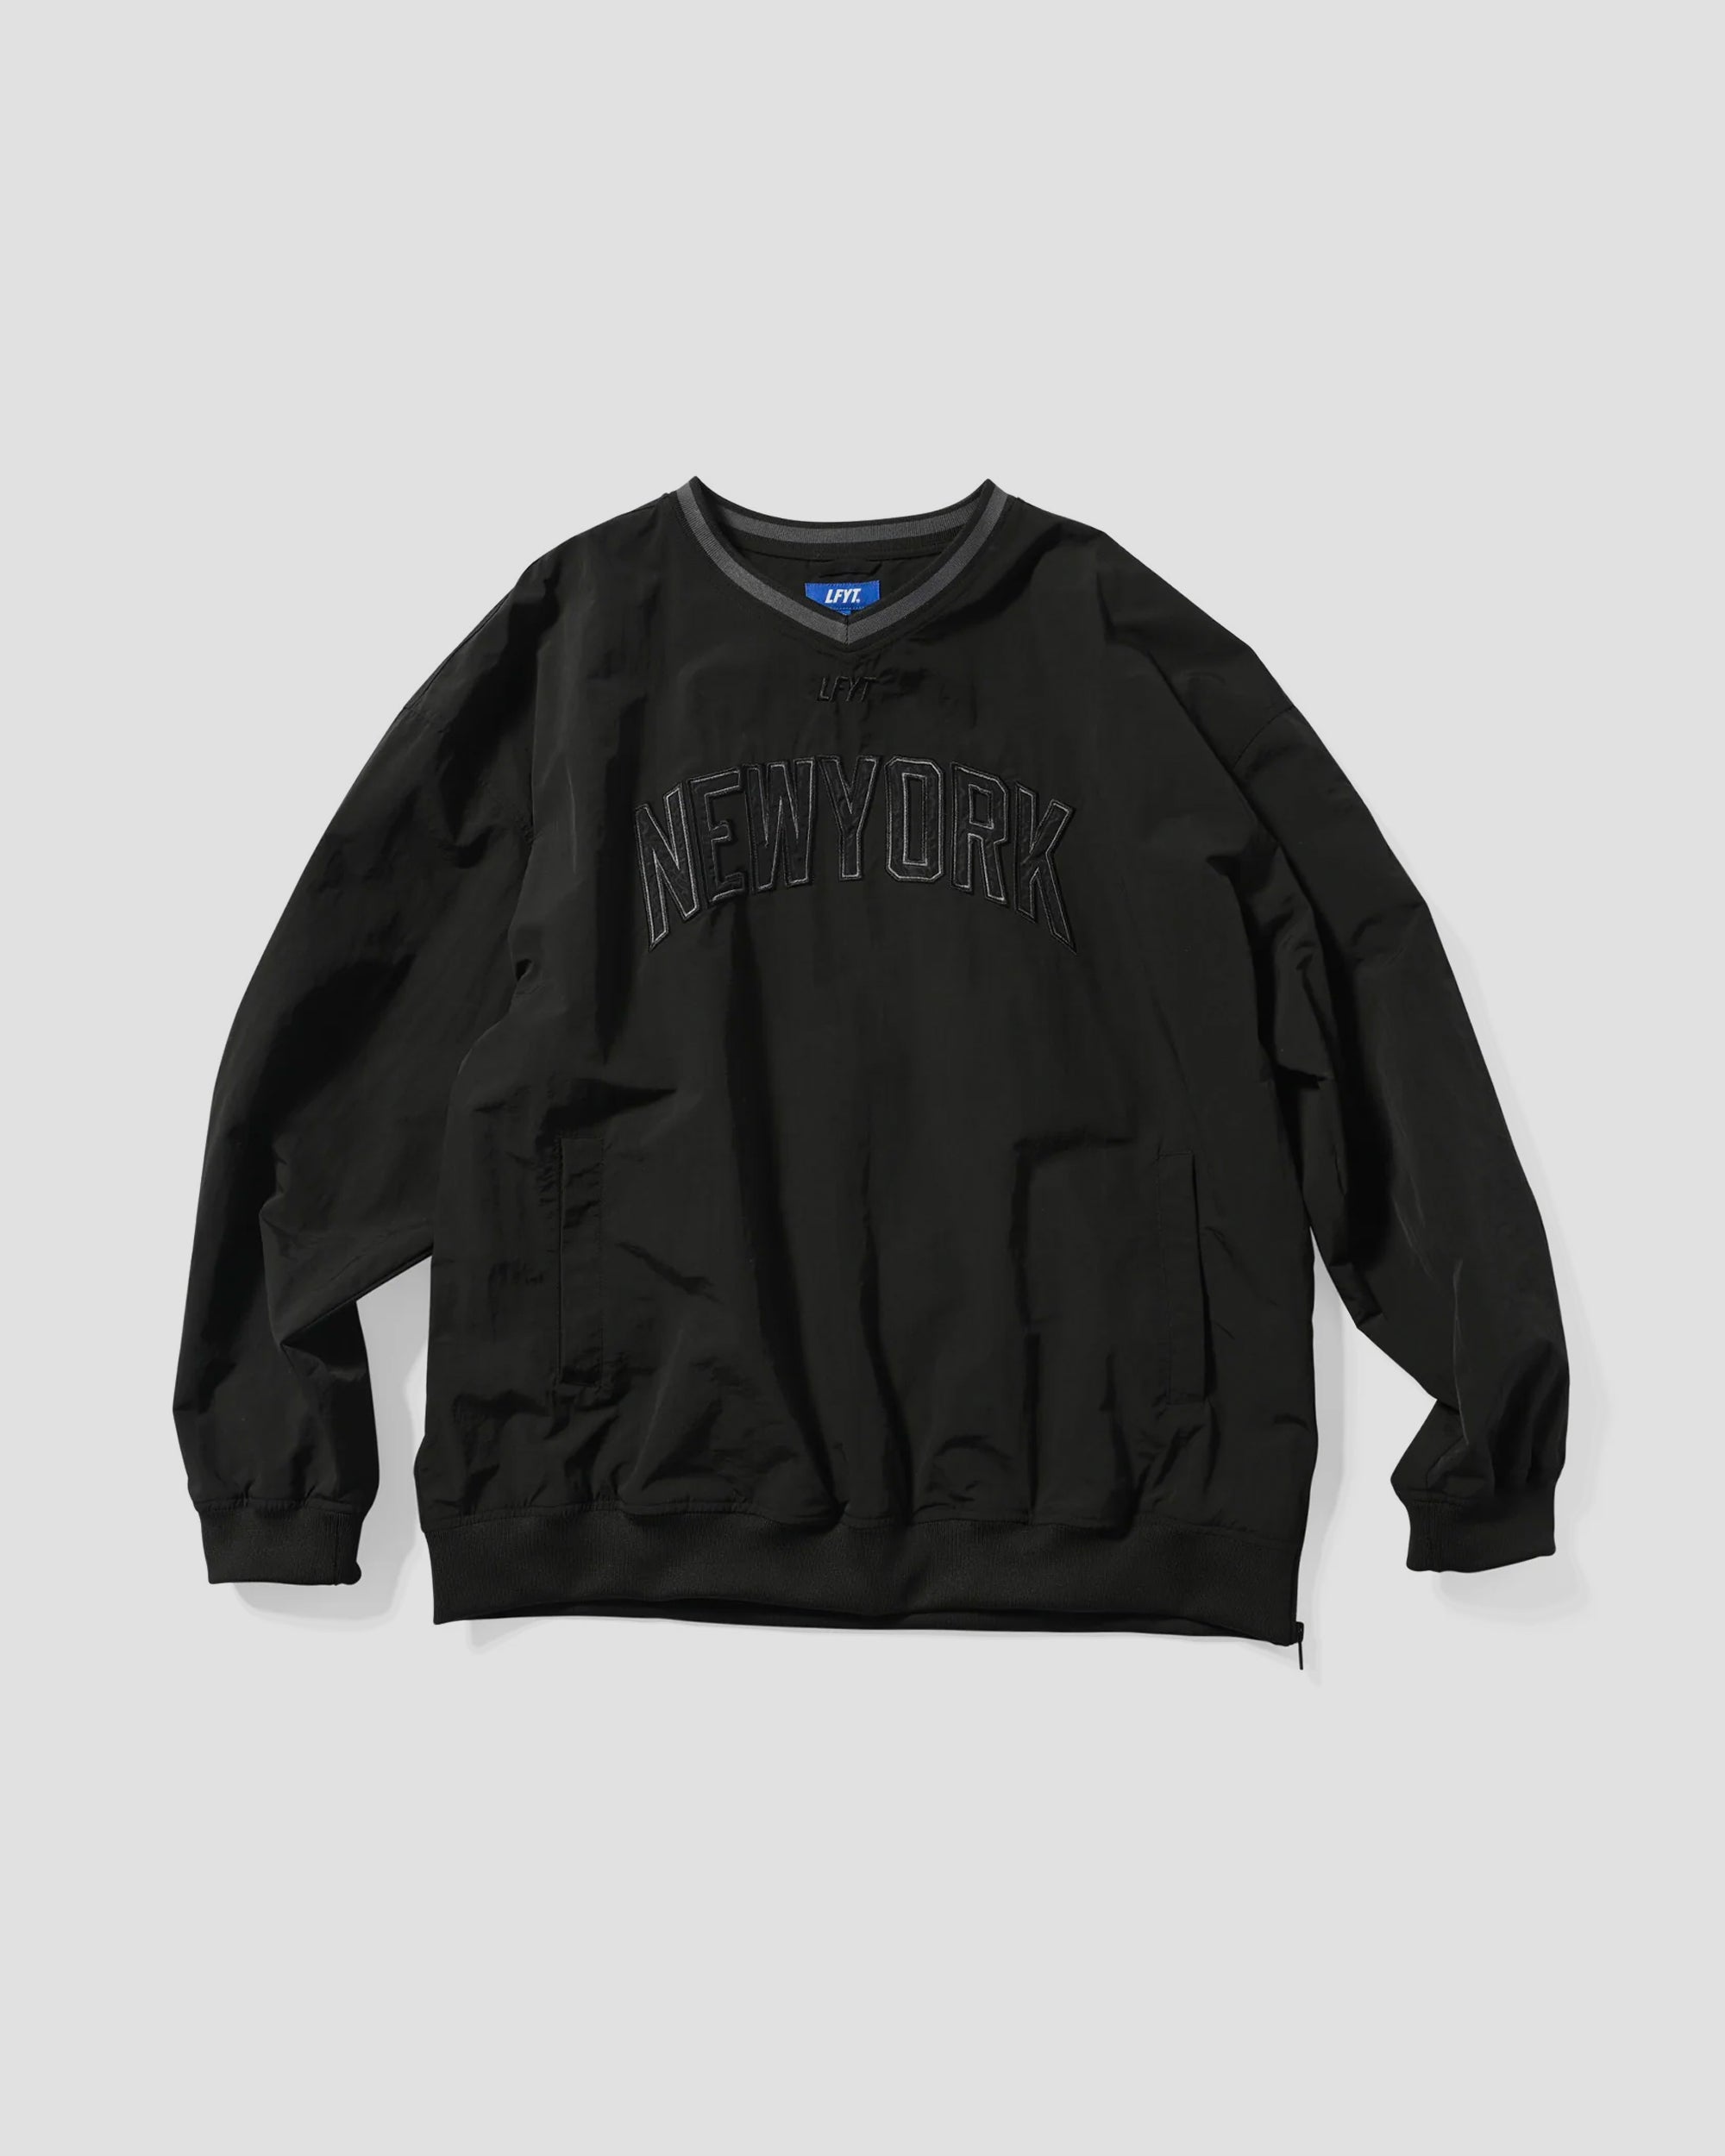 LFYT Nylon V-Neck Wind Shirt - Black